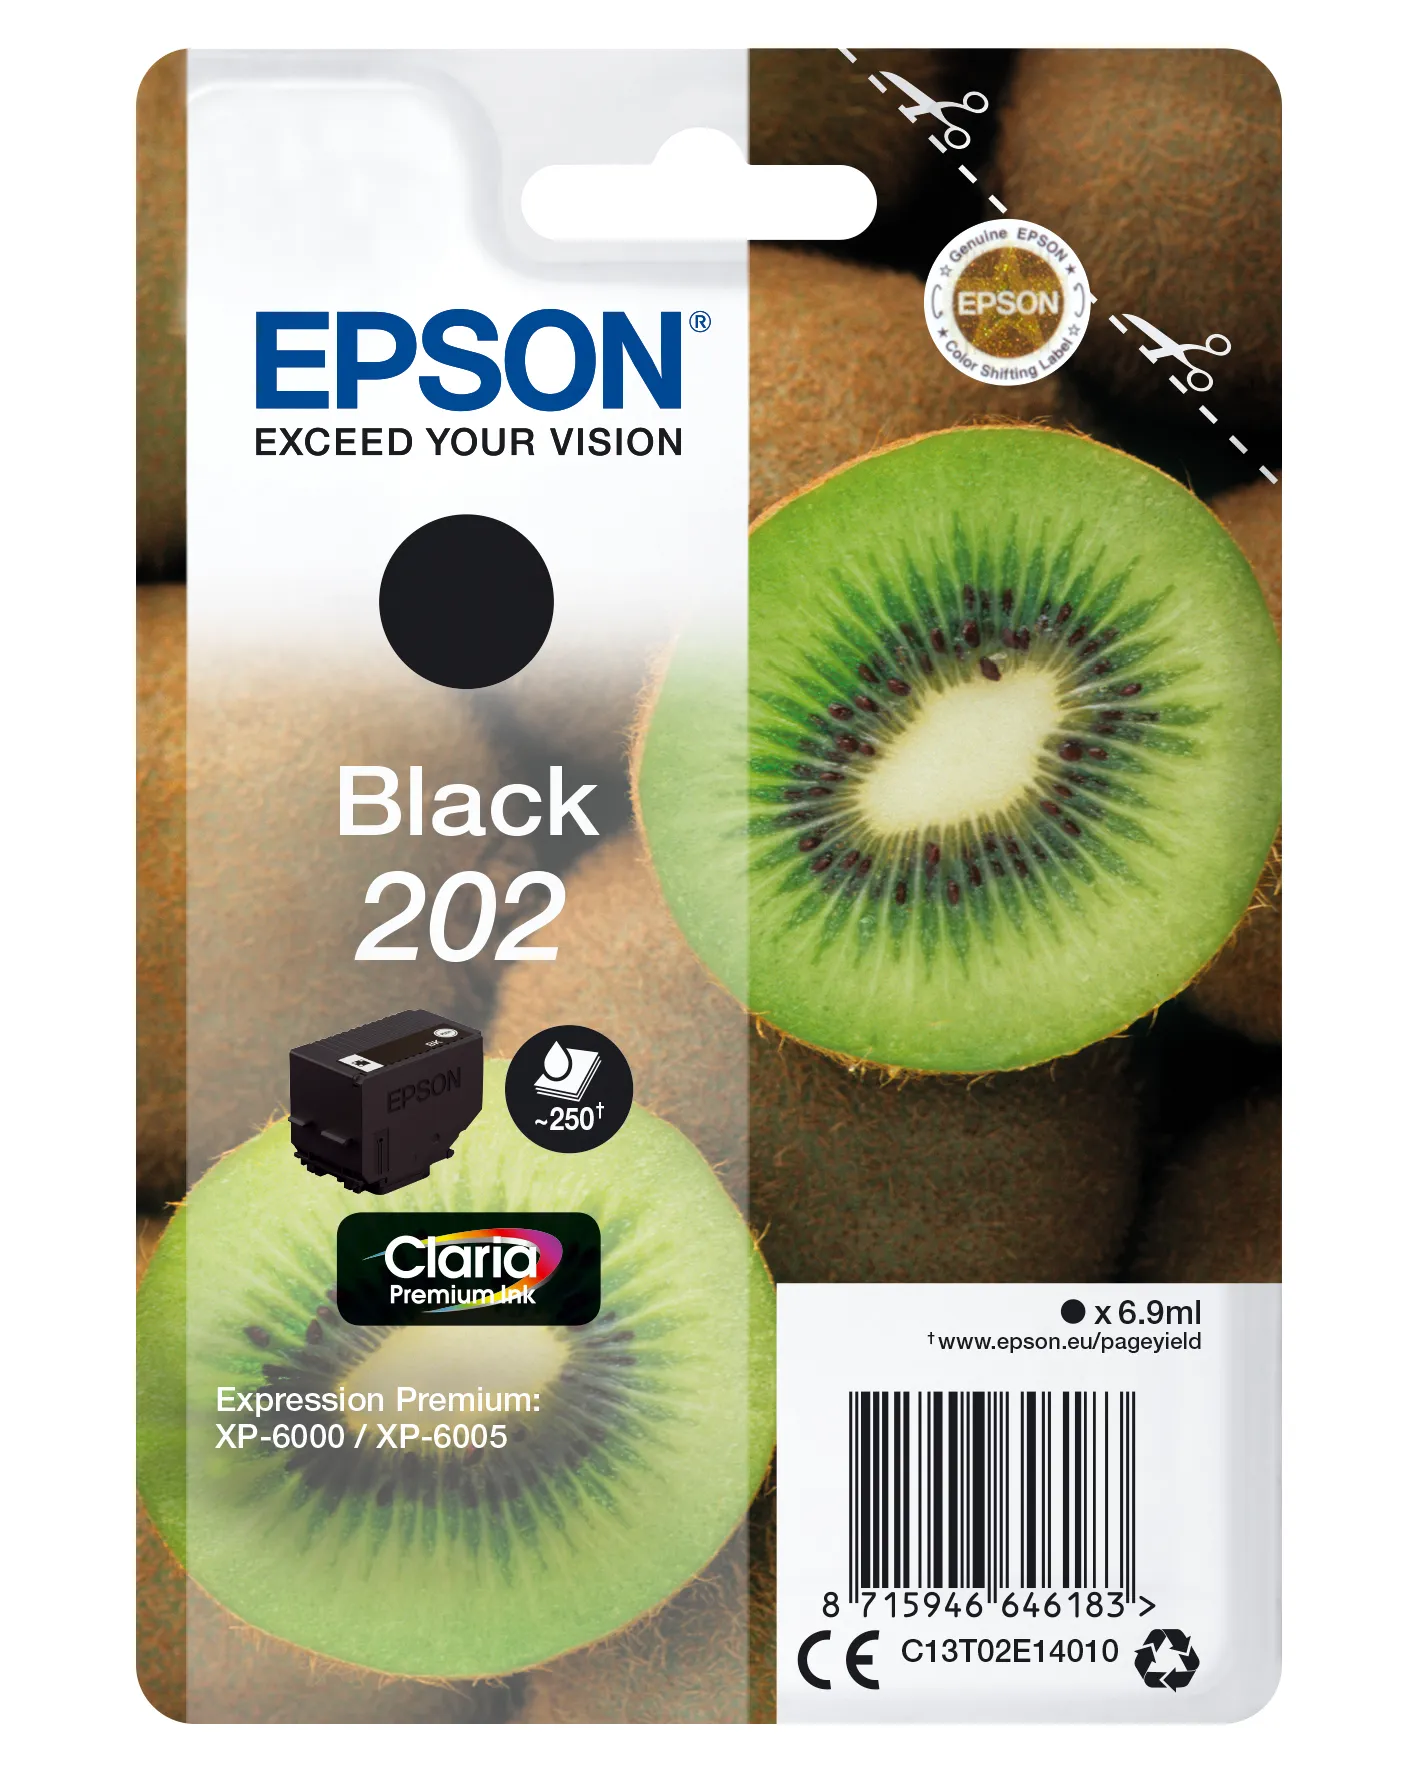 Vente EPSON 202 Black Ink Cartridge sec Epson au meilleur prix - visuel 4